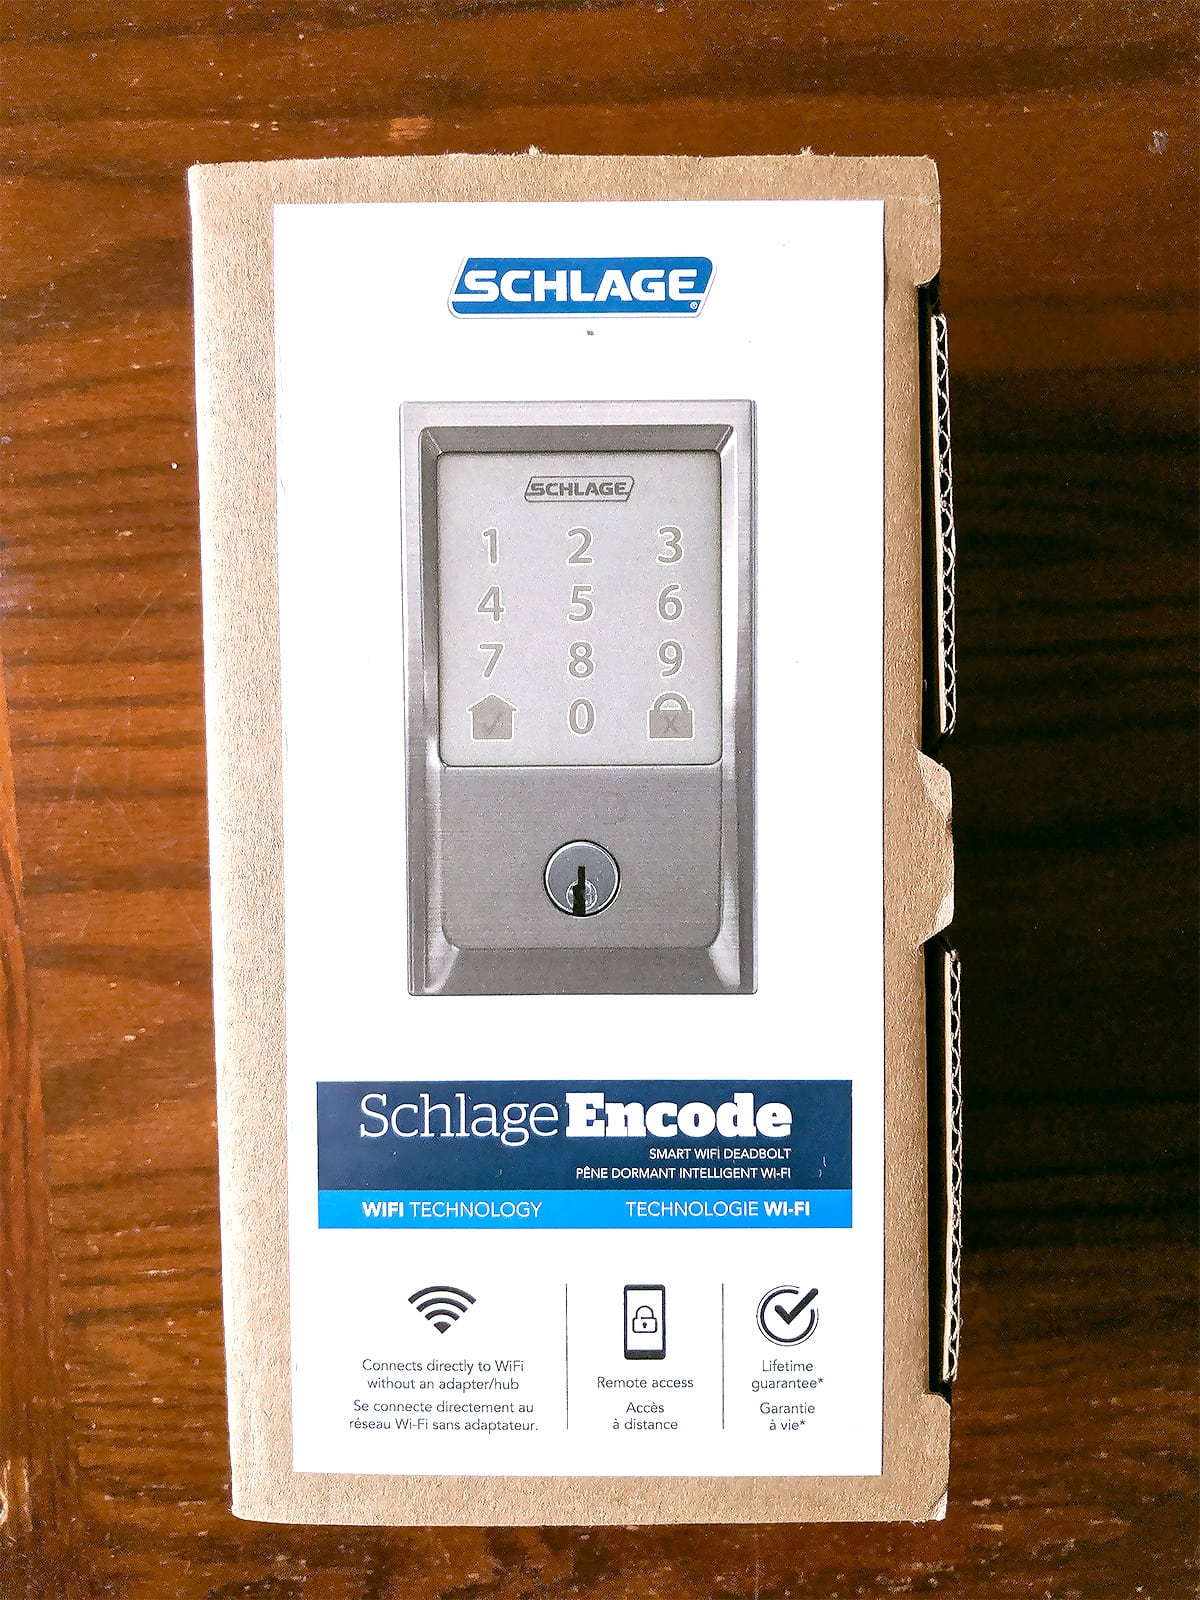 Environmental-friendly minimal packaging encases the Schlage Encode WiFi enabled digital lock.